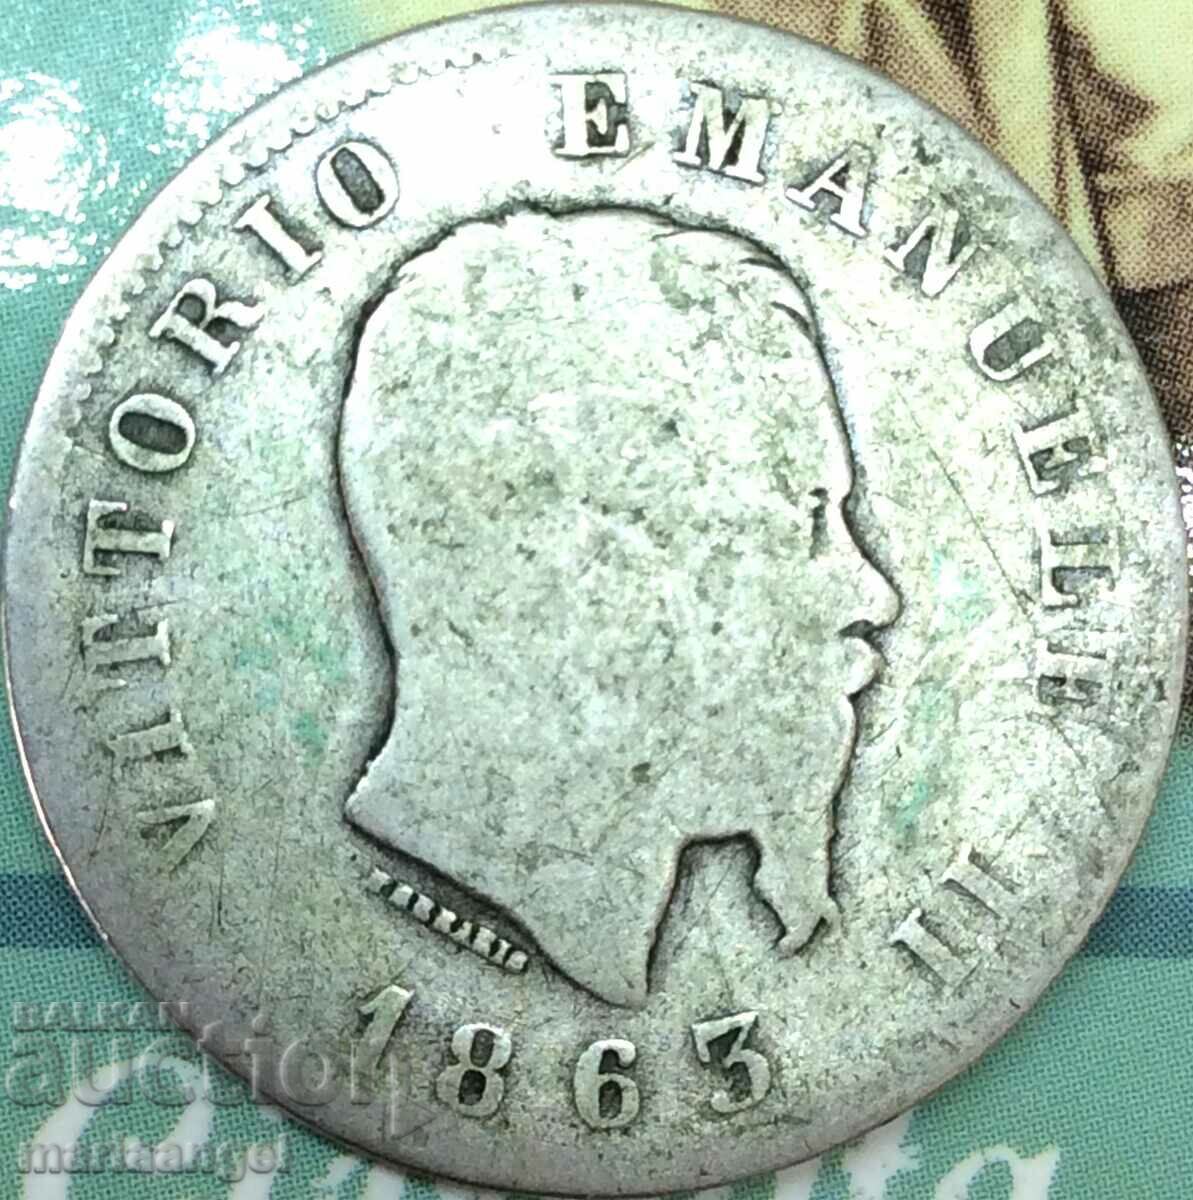 1 lira 1863 Italia Victor Emmanuel argint